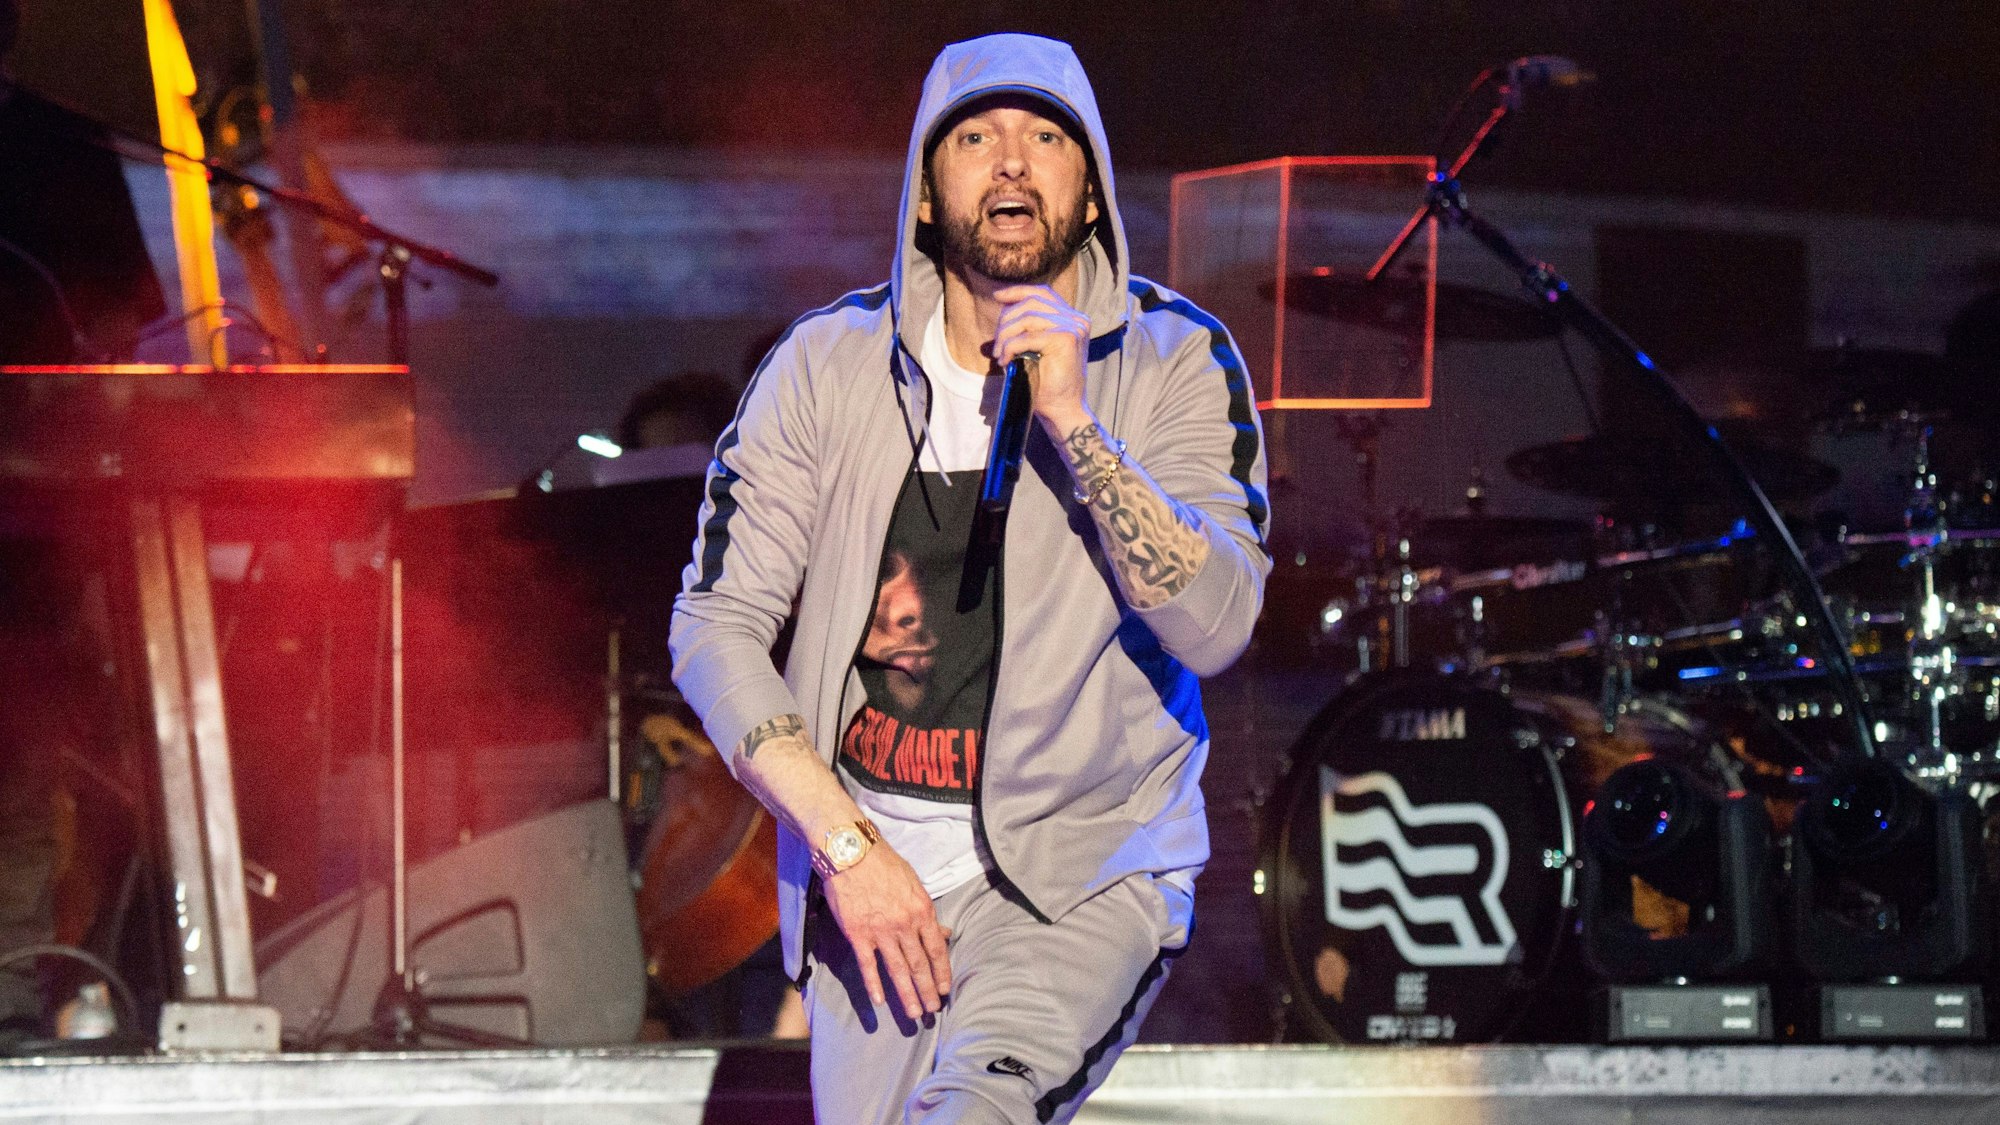 Etablierte sich in einer Szene, die eine afroamerikanischen Ursprung hat: Eminem ist heute einer der bekanntesten Rapper überhaupt.